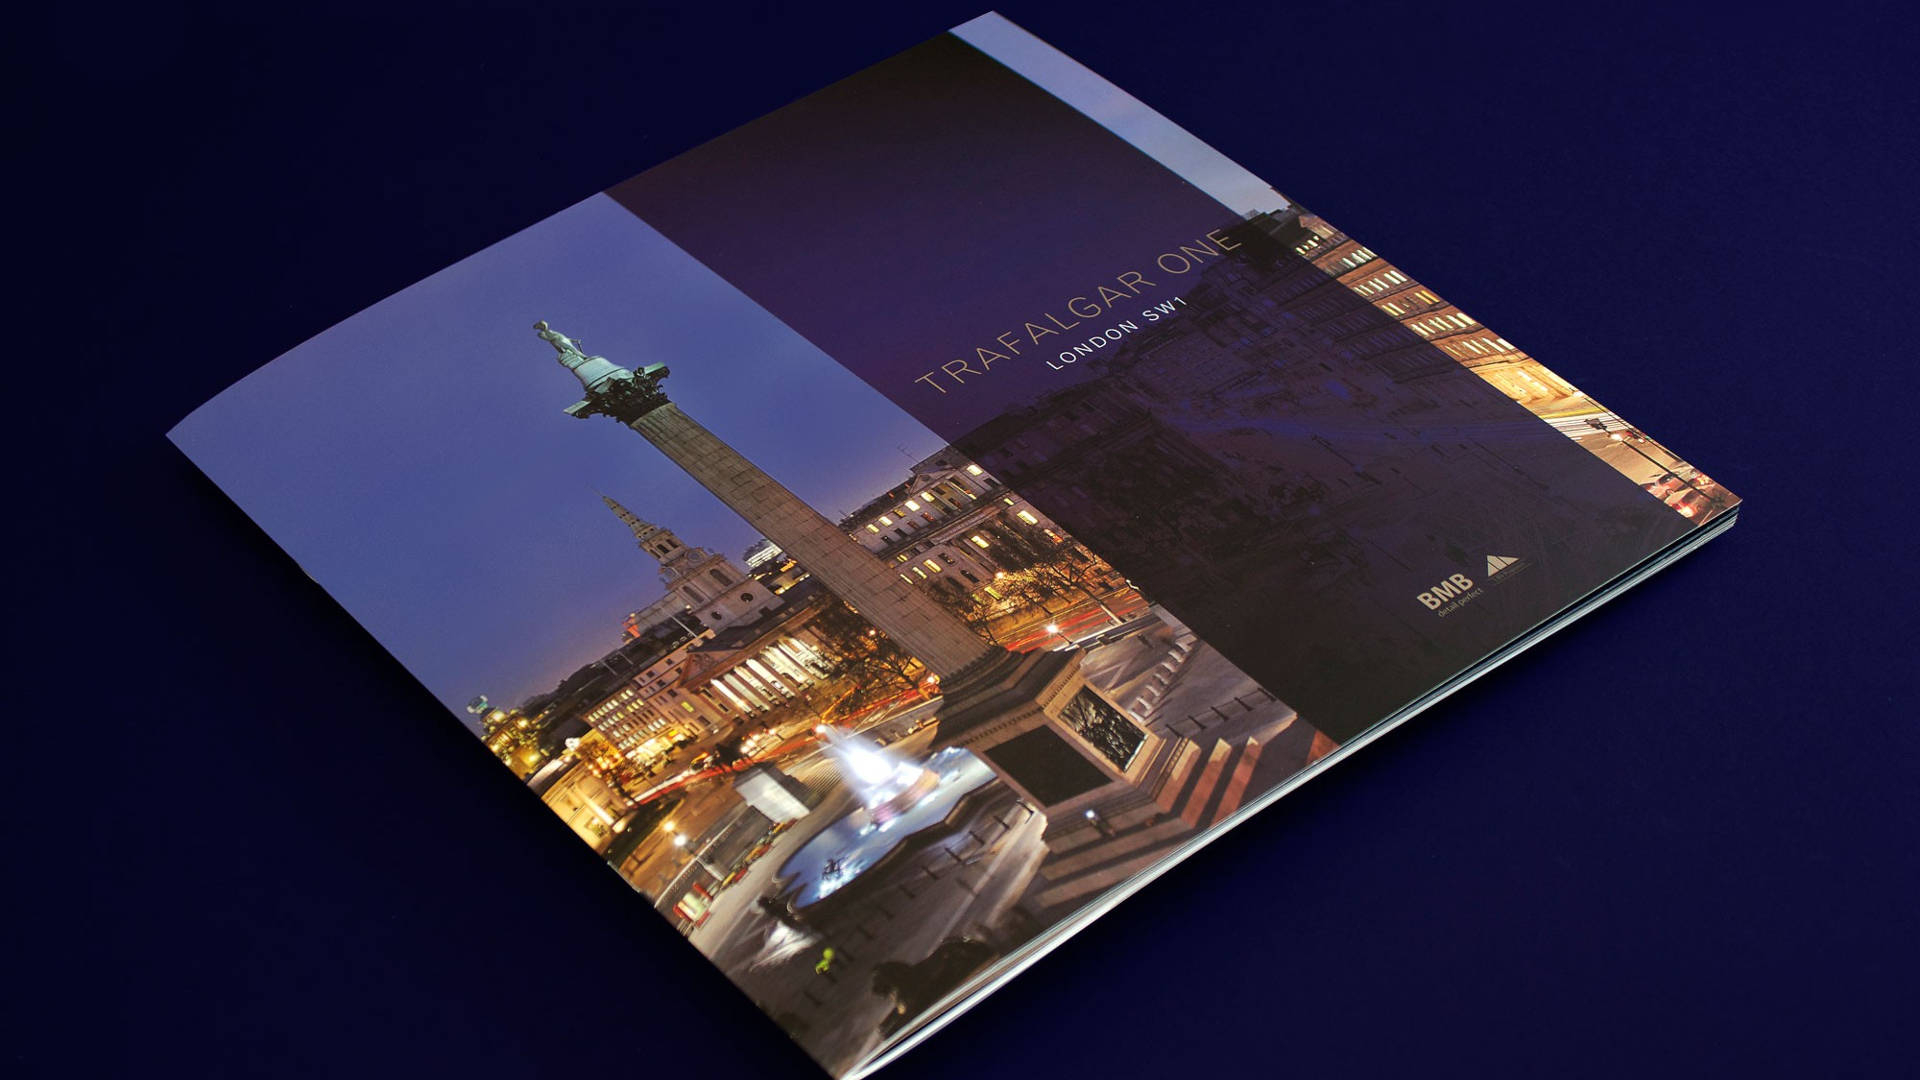 25+ Luxury Brochure Design | Free & Premium Templates Within Hotel Brochure Design Templates